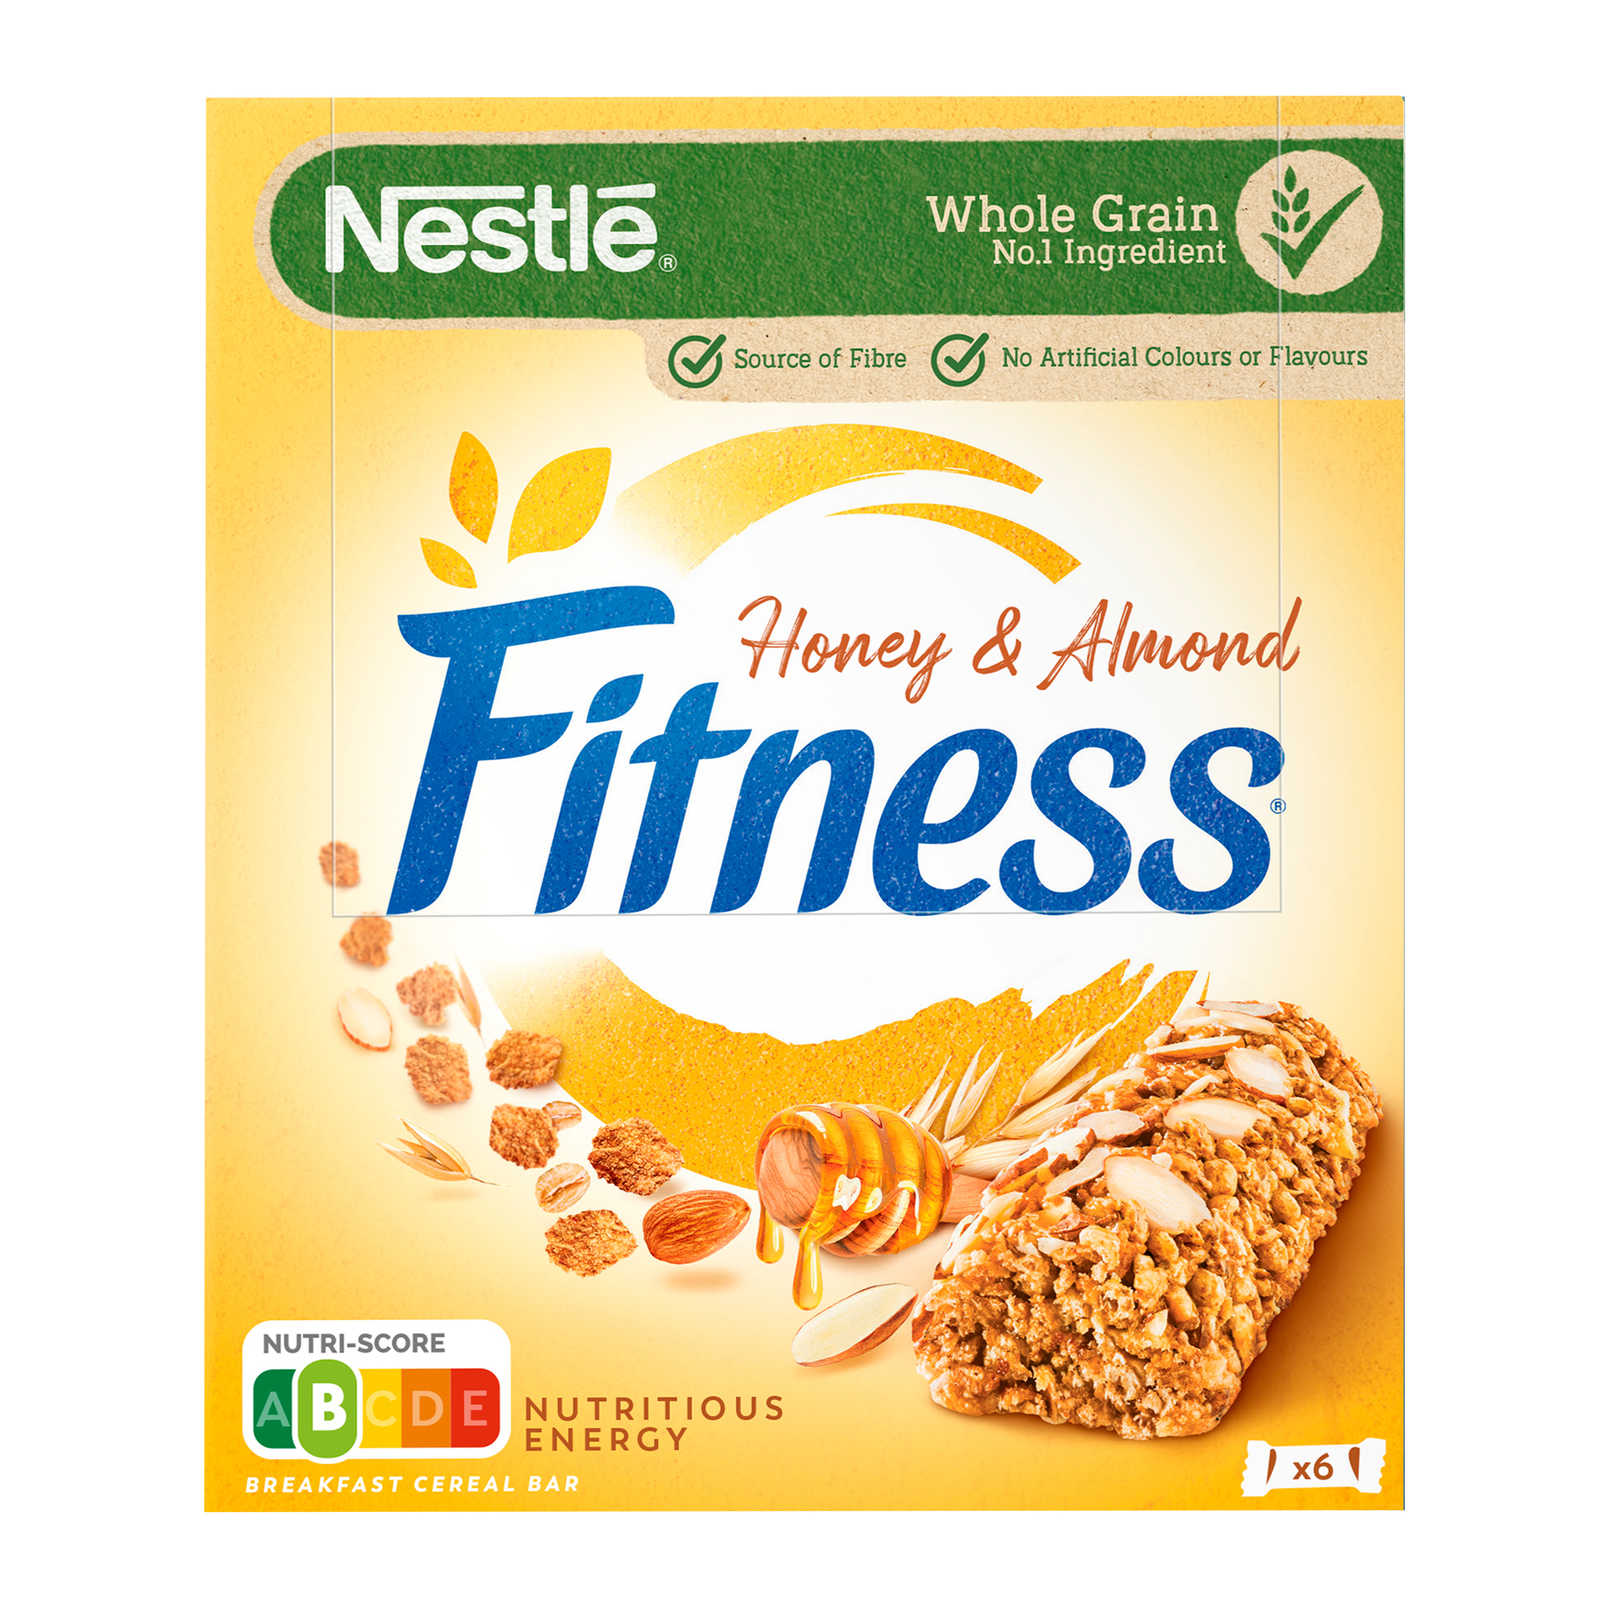 Nestlé-Fitness